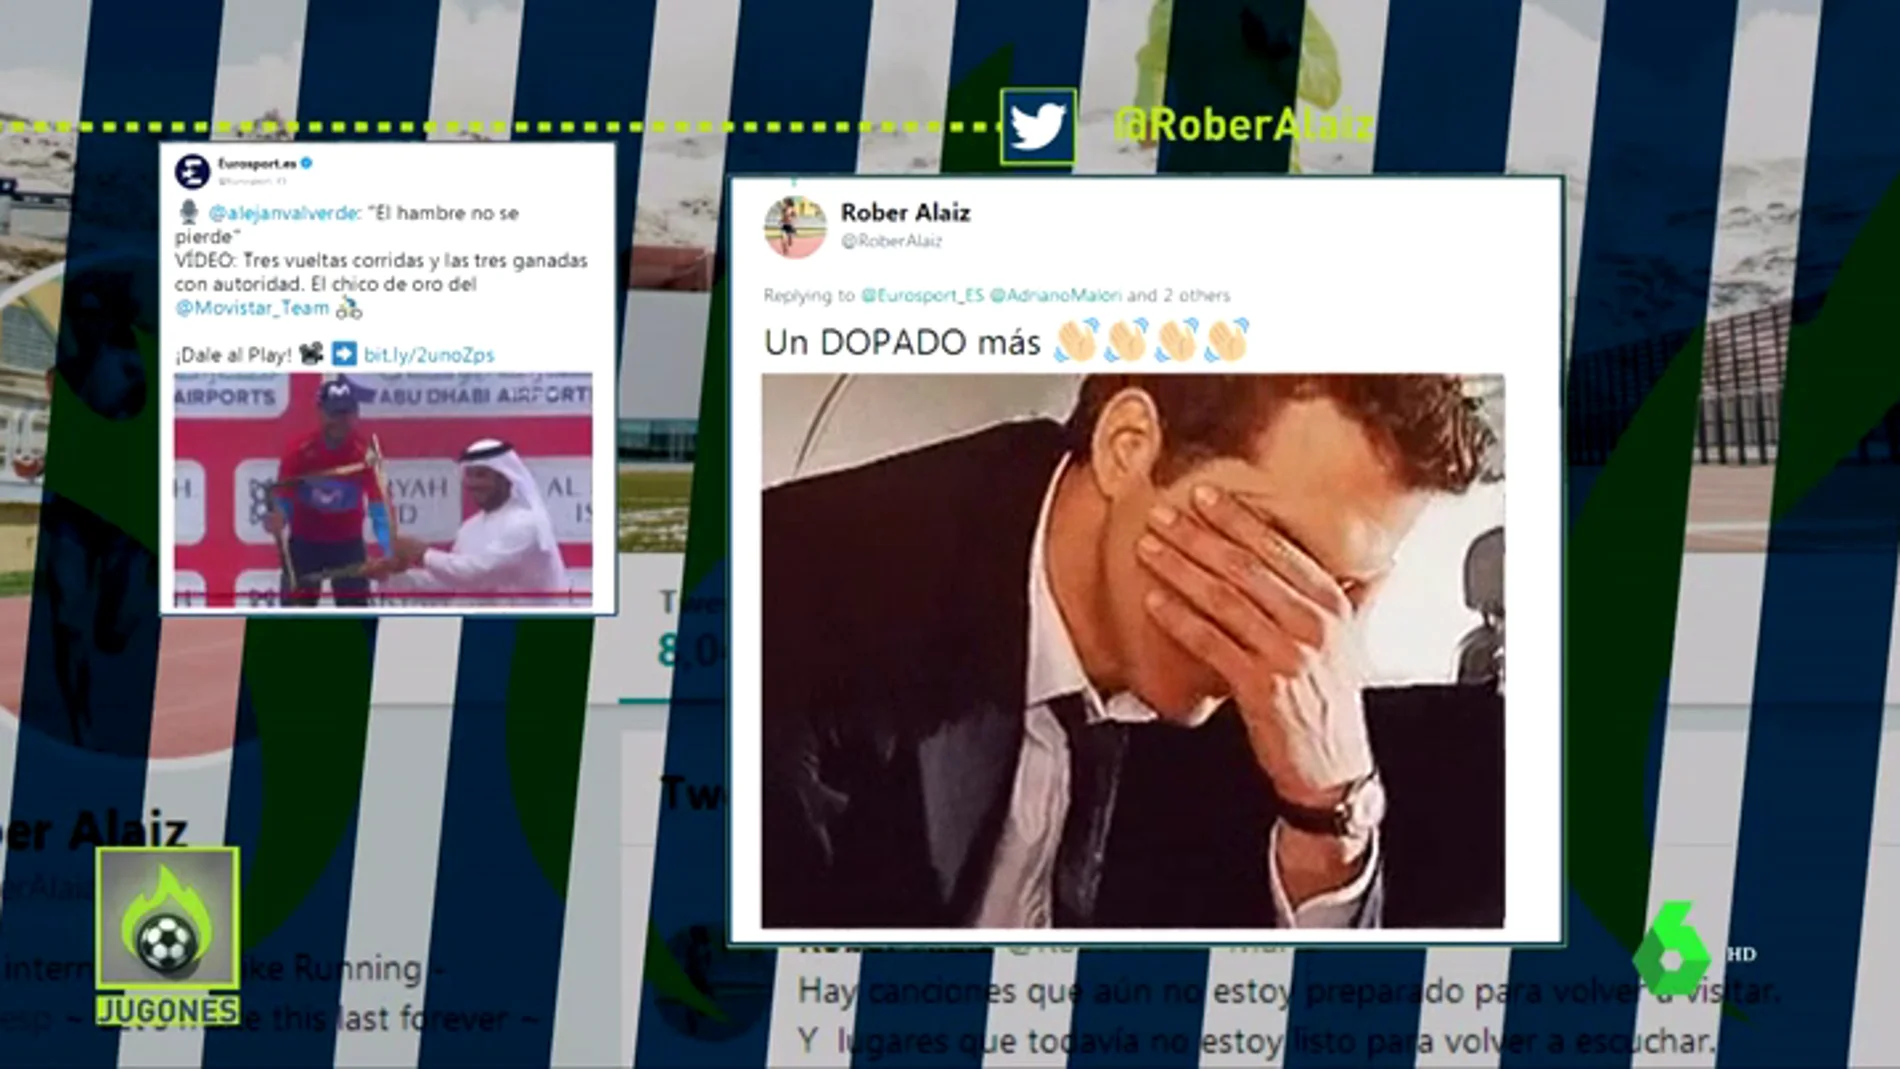 El atleta Rober Alaiz ataca a Alejandro Valverde en Twitter: "Un dopado más"